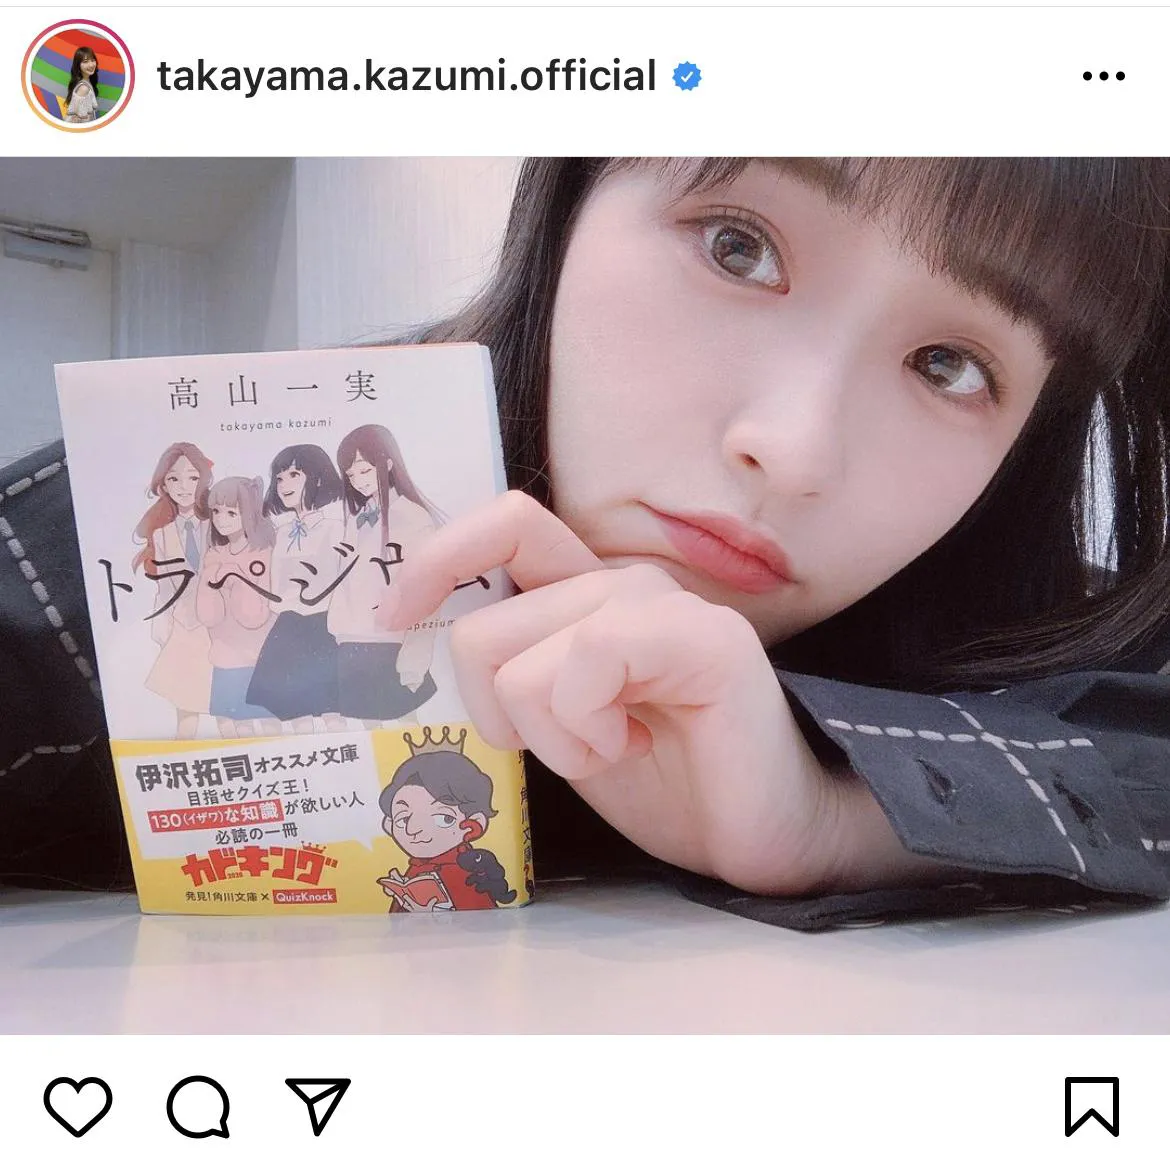 ※画像は高山一実(takayama.kazumi.official)公式Instagramのスクリーンショット